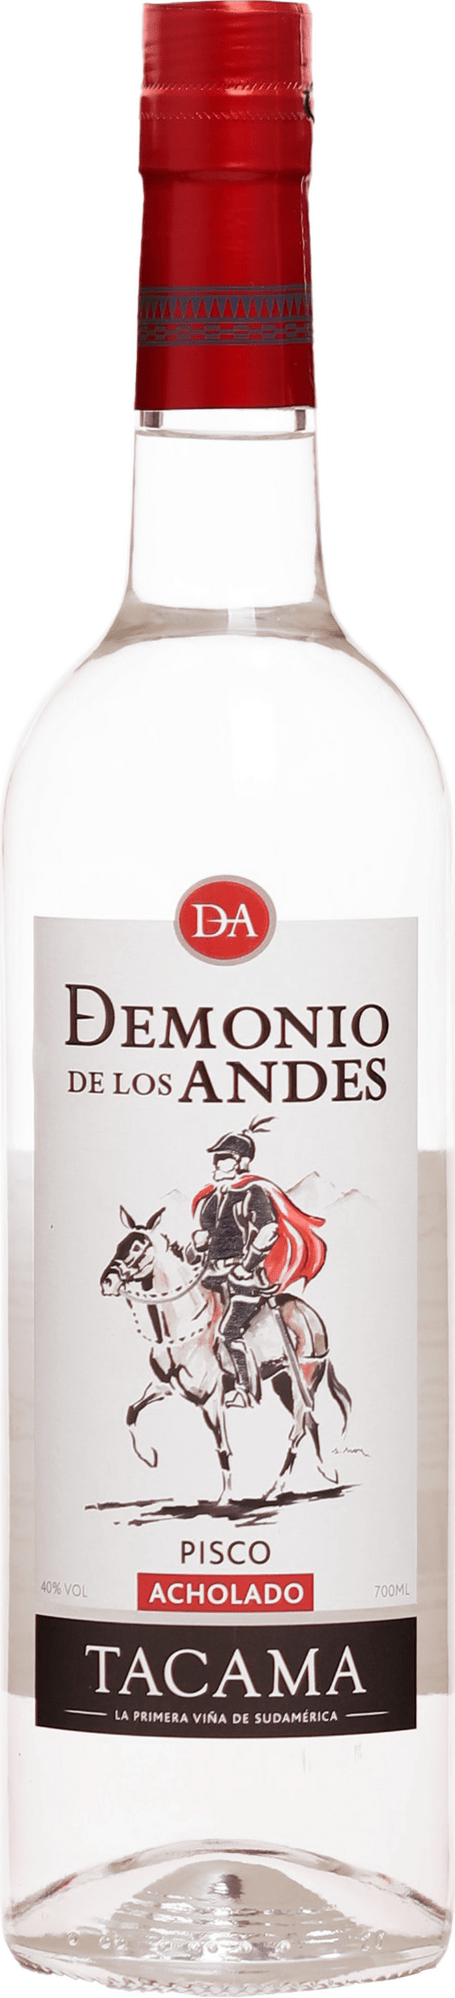 Demonio de los Andes Pisco Acholado